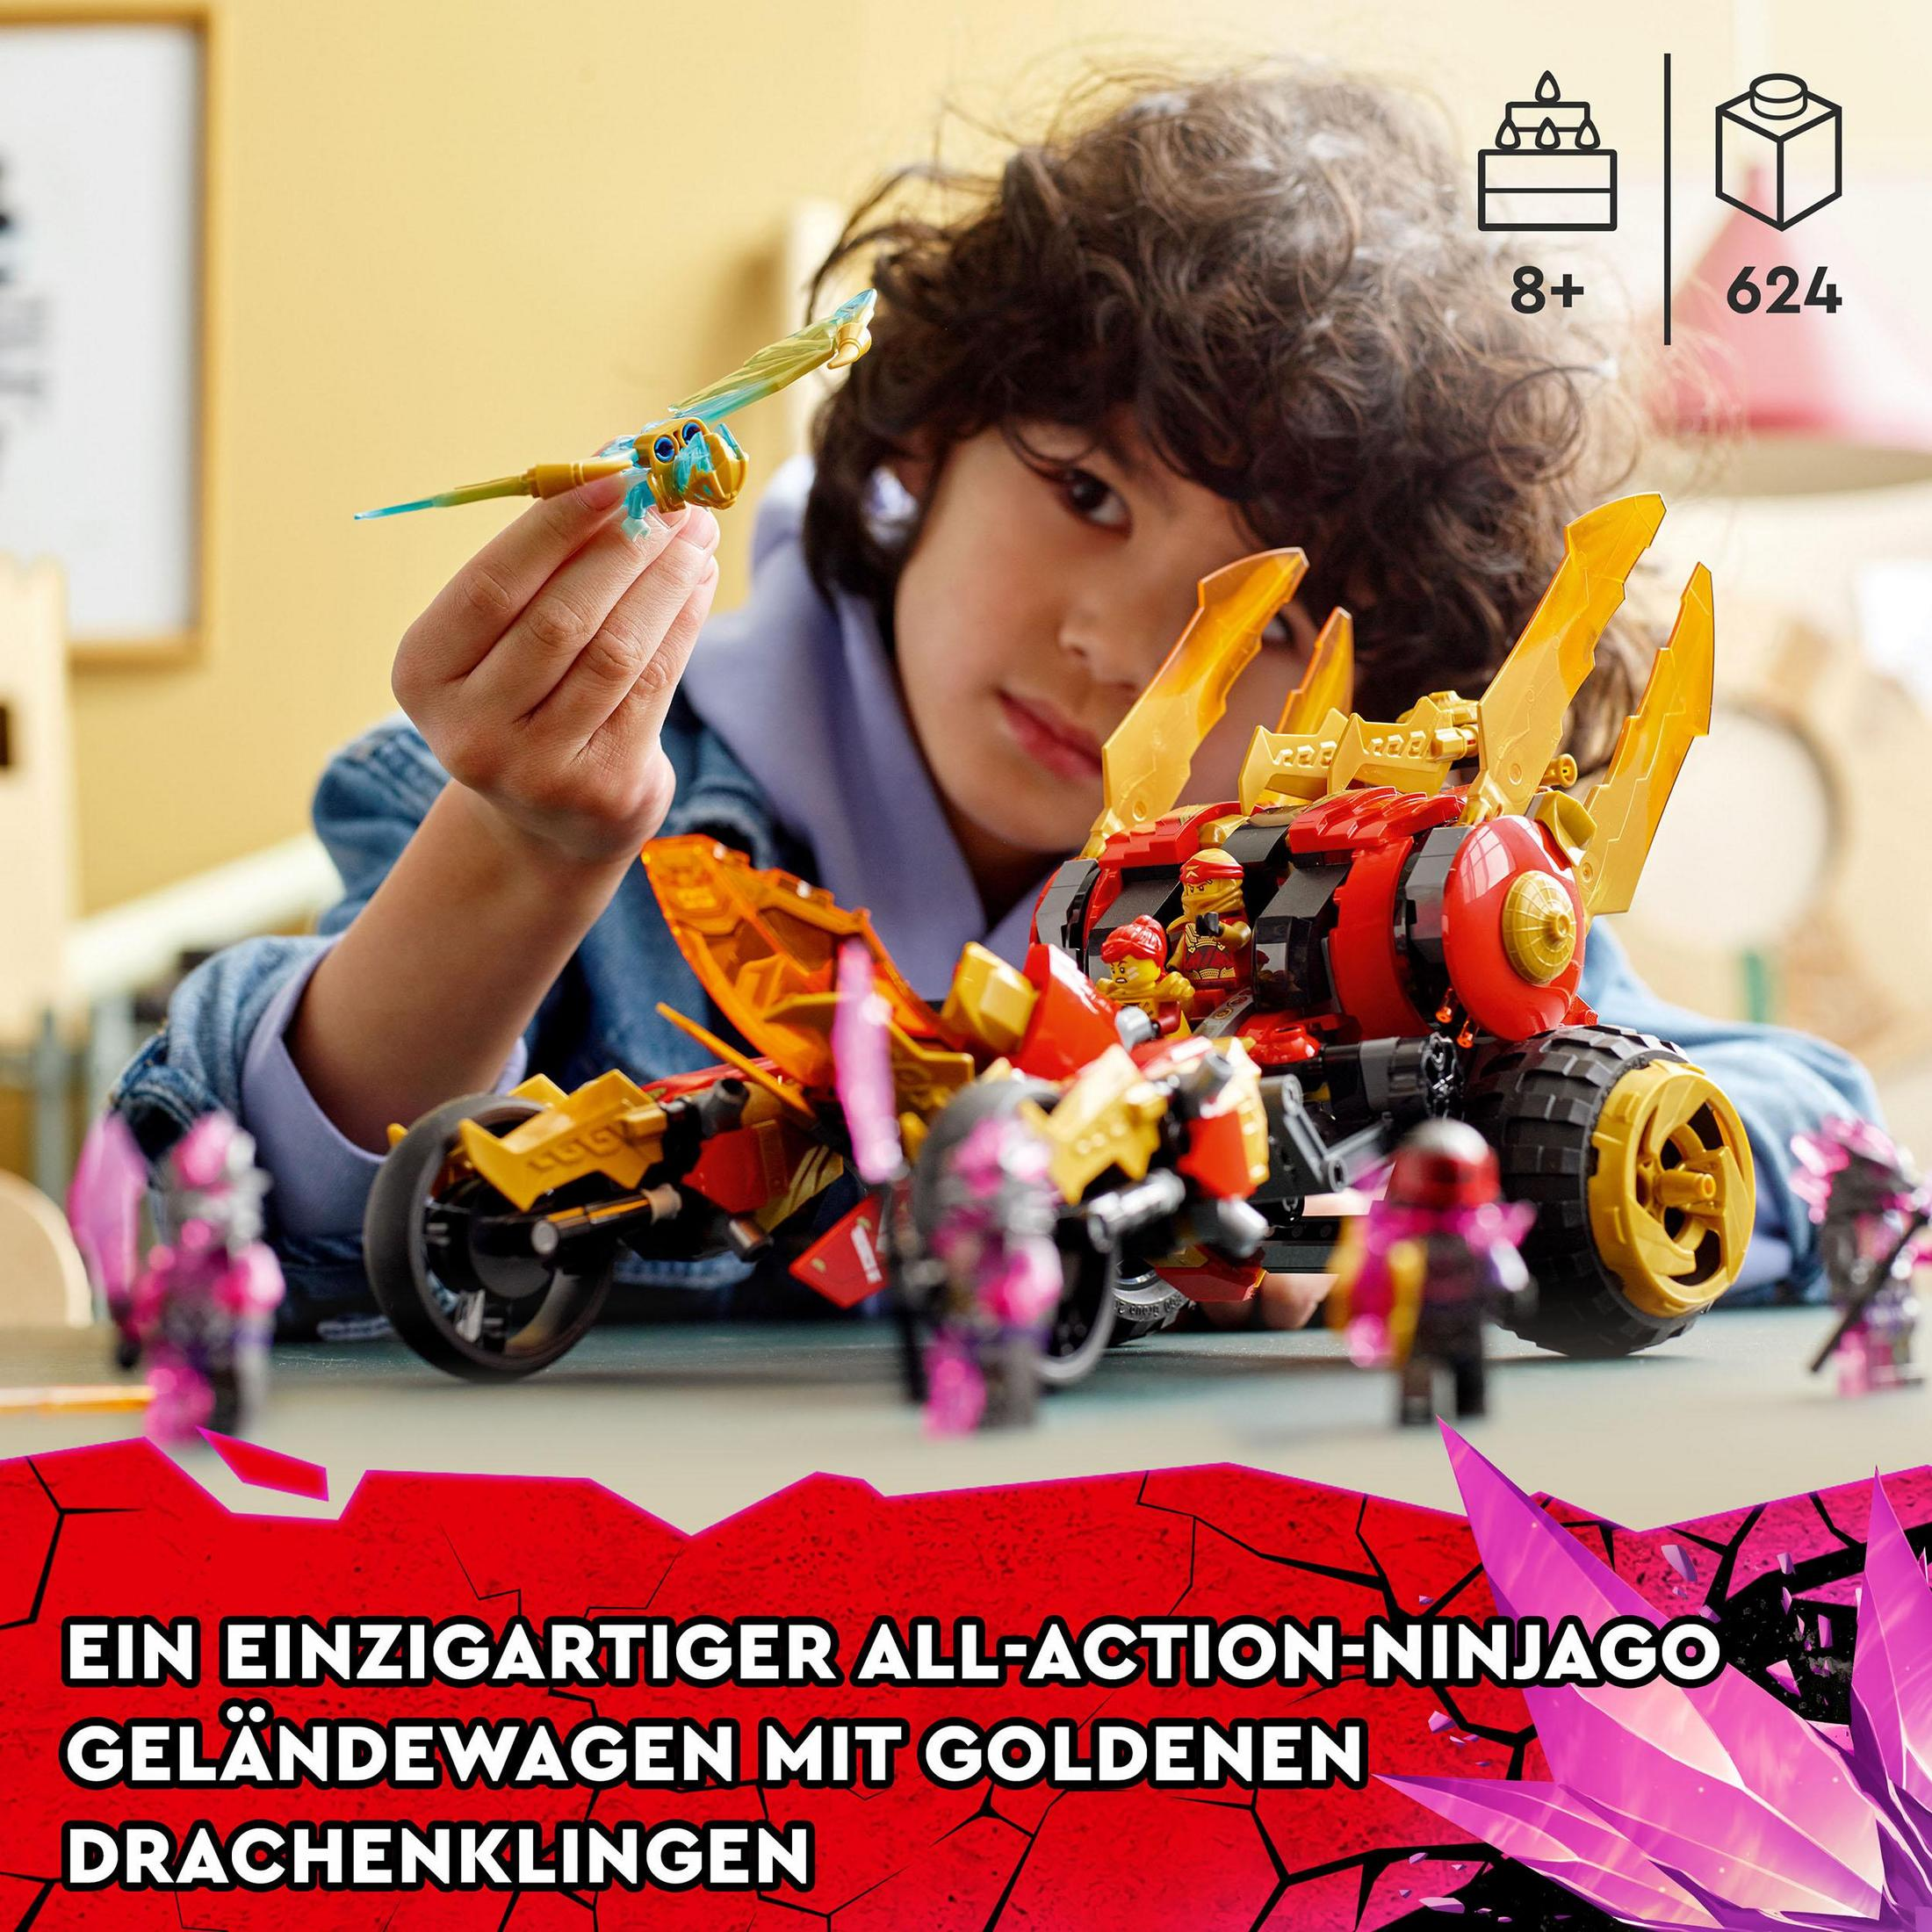 GOLDDRACHEN-RAIDER LEGO KAIS LEGO Ninjago 71773